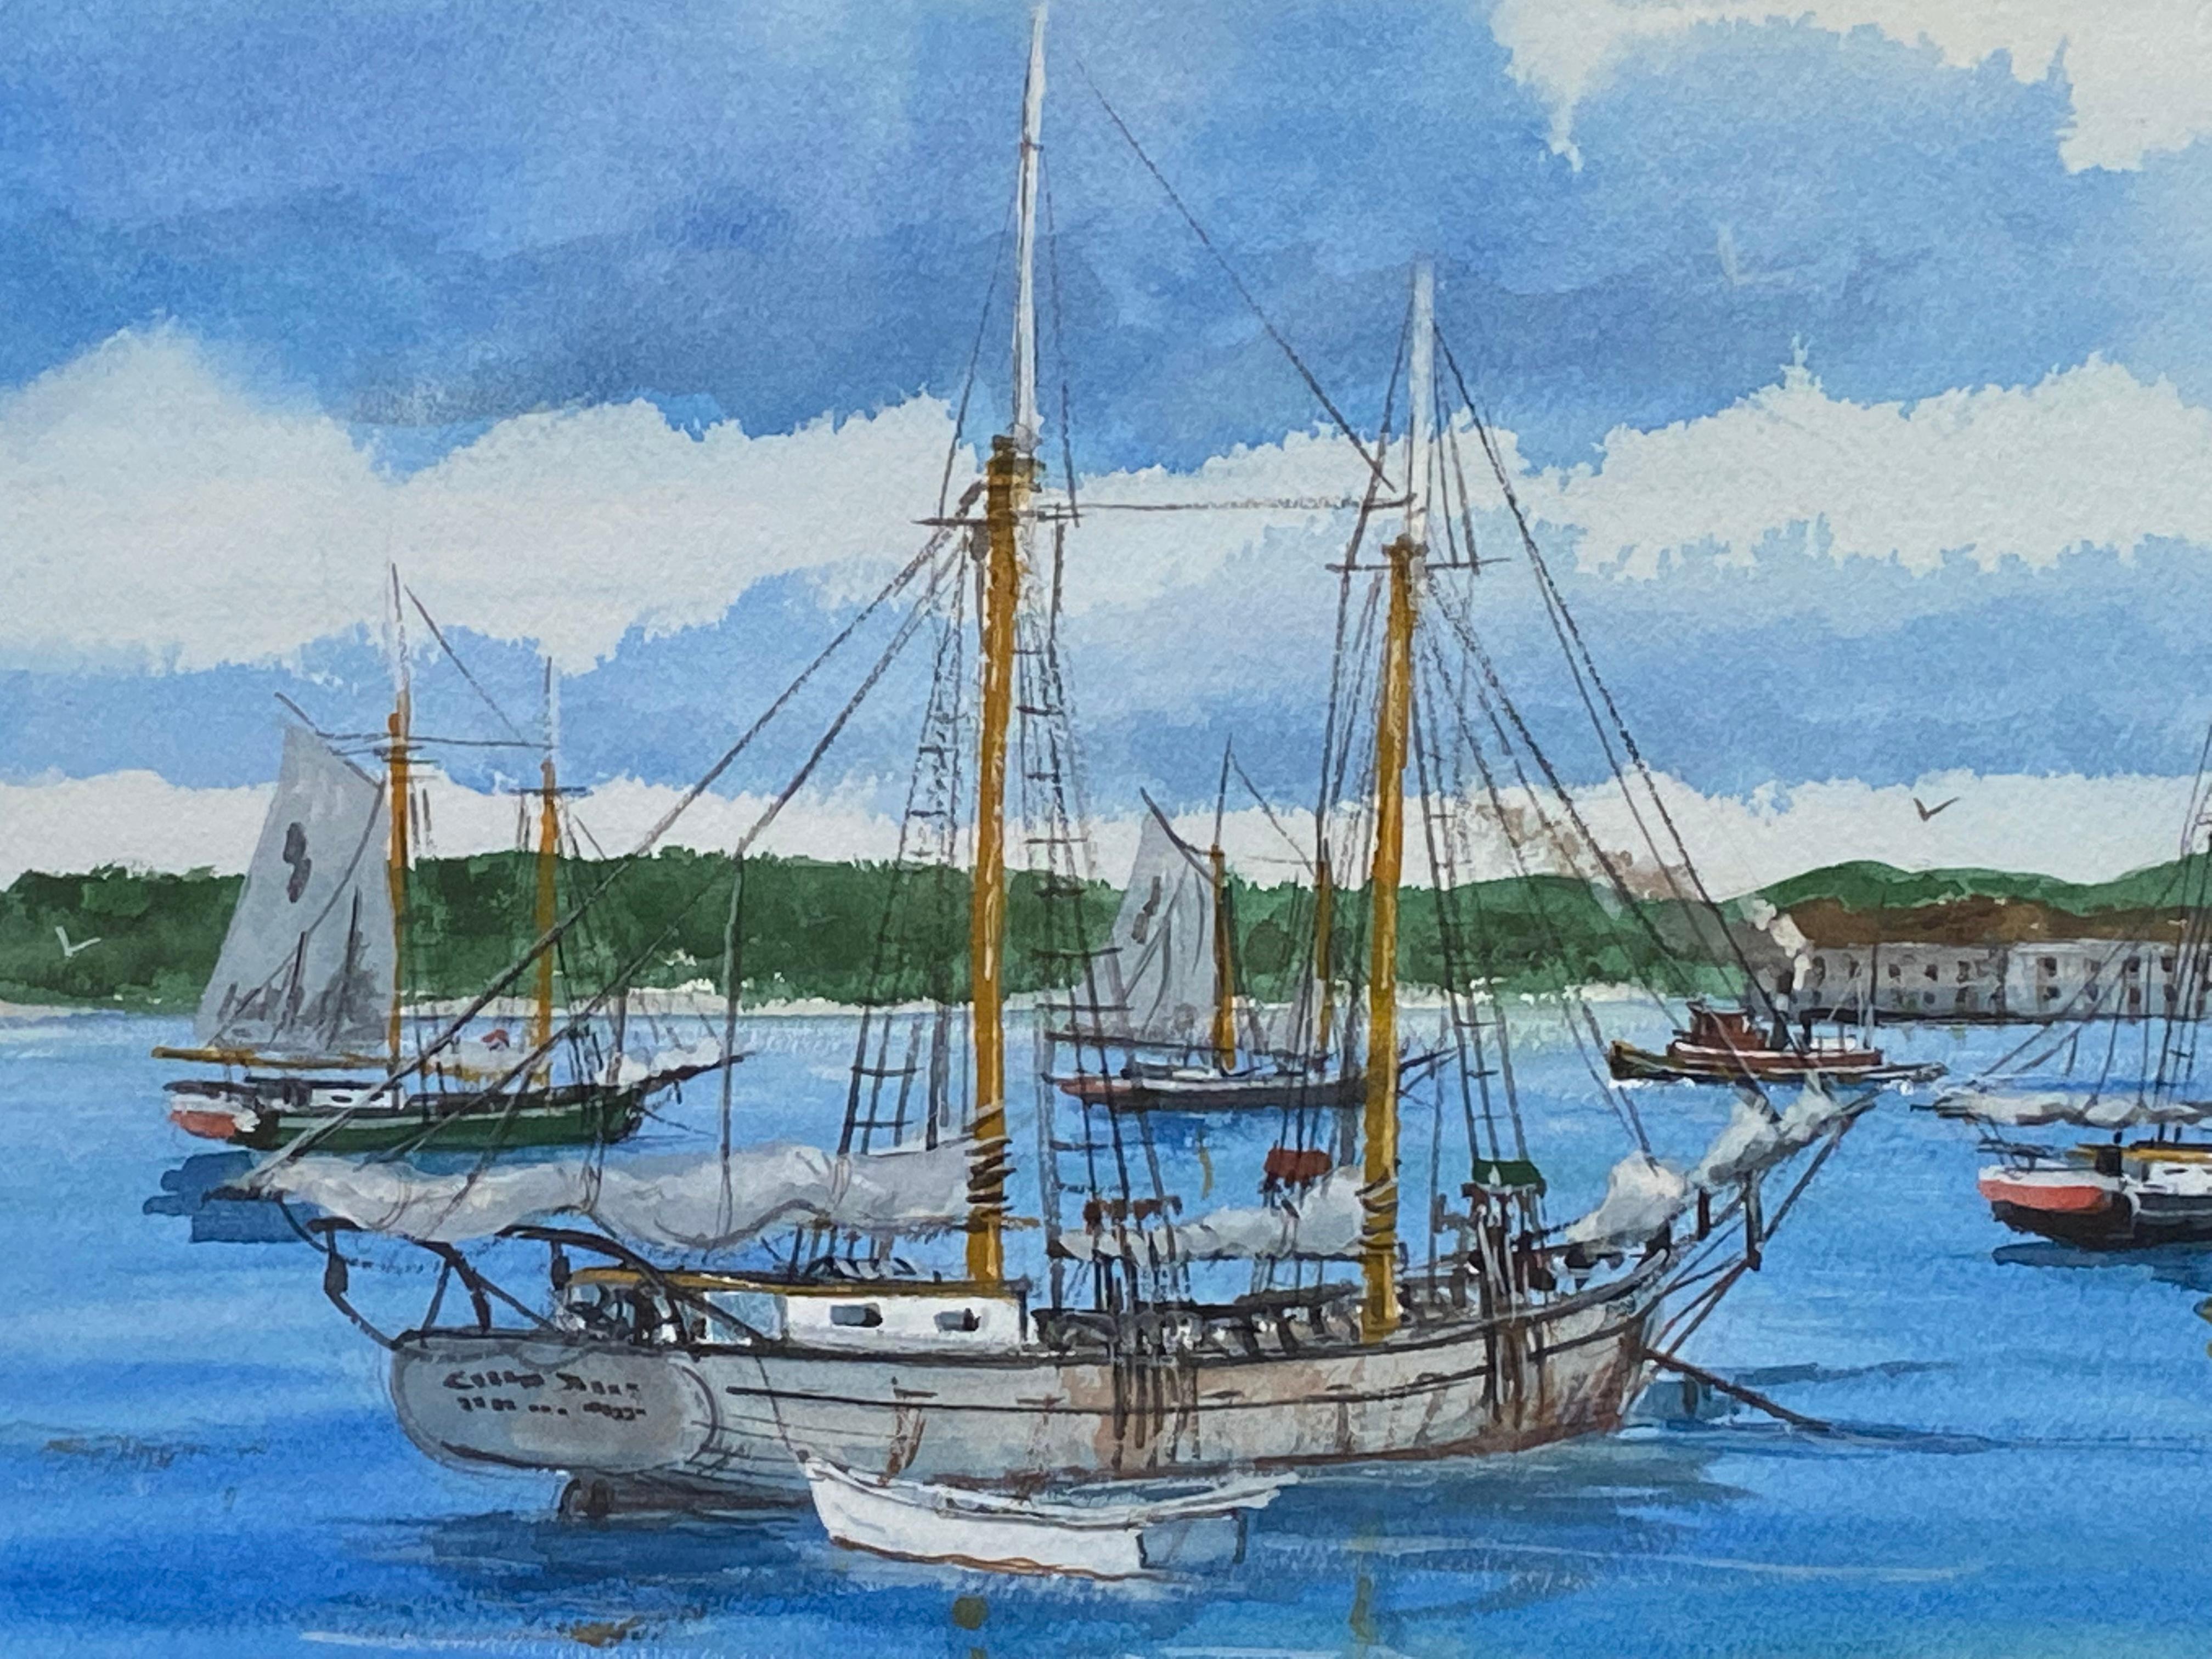 Belle aquarelle et gouache sur papier d'archives par l'artiste bien connu du Maine, Bill Paxton. L'aquarelle représente ce à quoi ressemblait le port de Portland, dans le Maine, en 1910, avec des voiliers de l'époque amarrés dans le port. Signé en